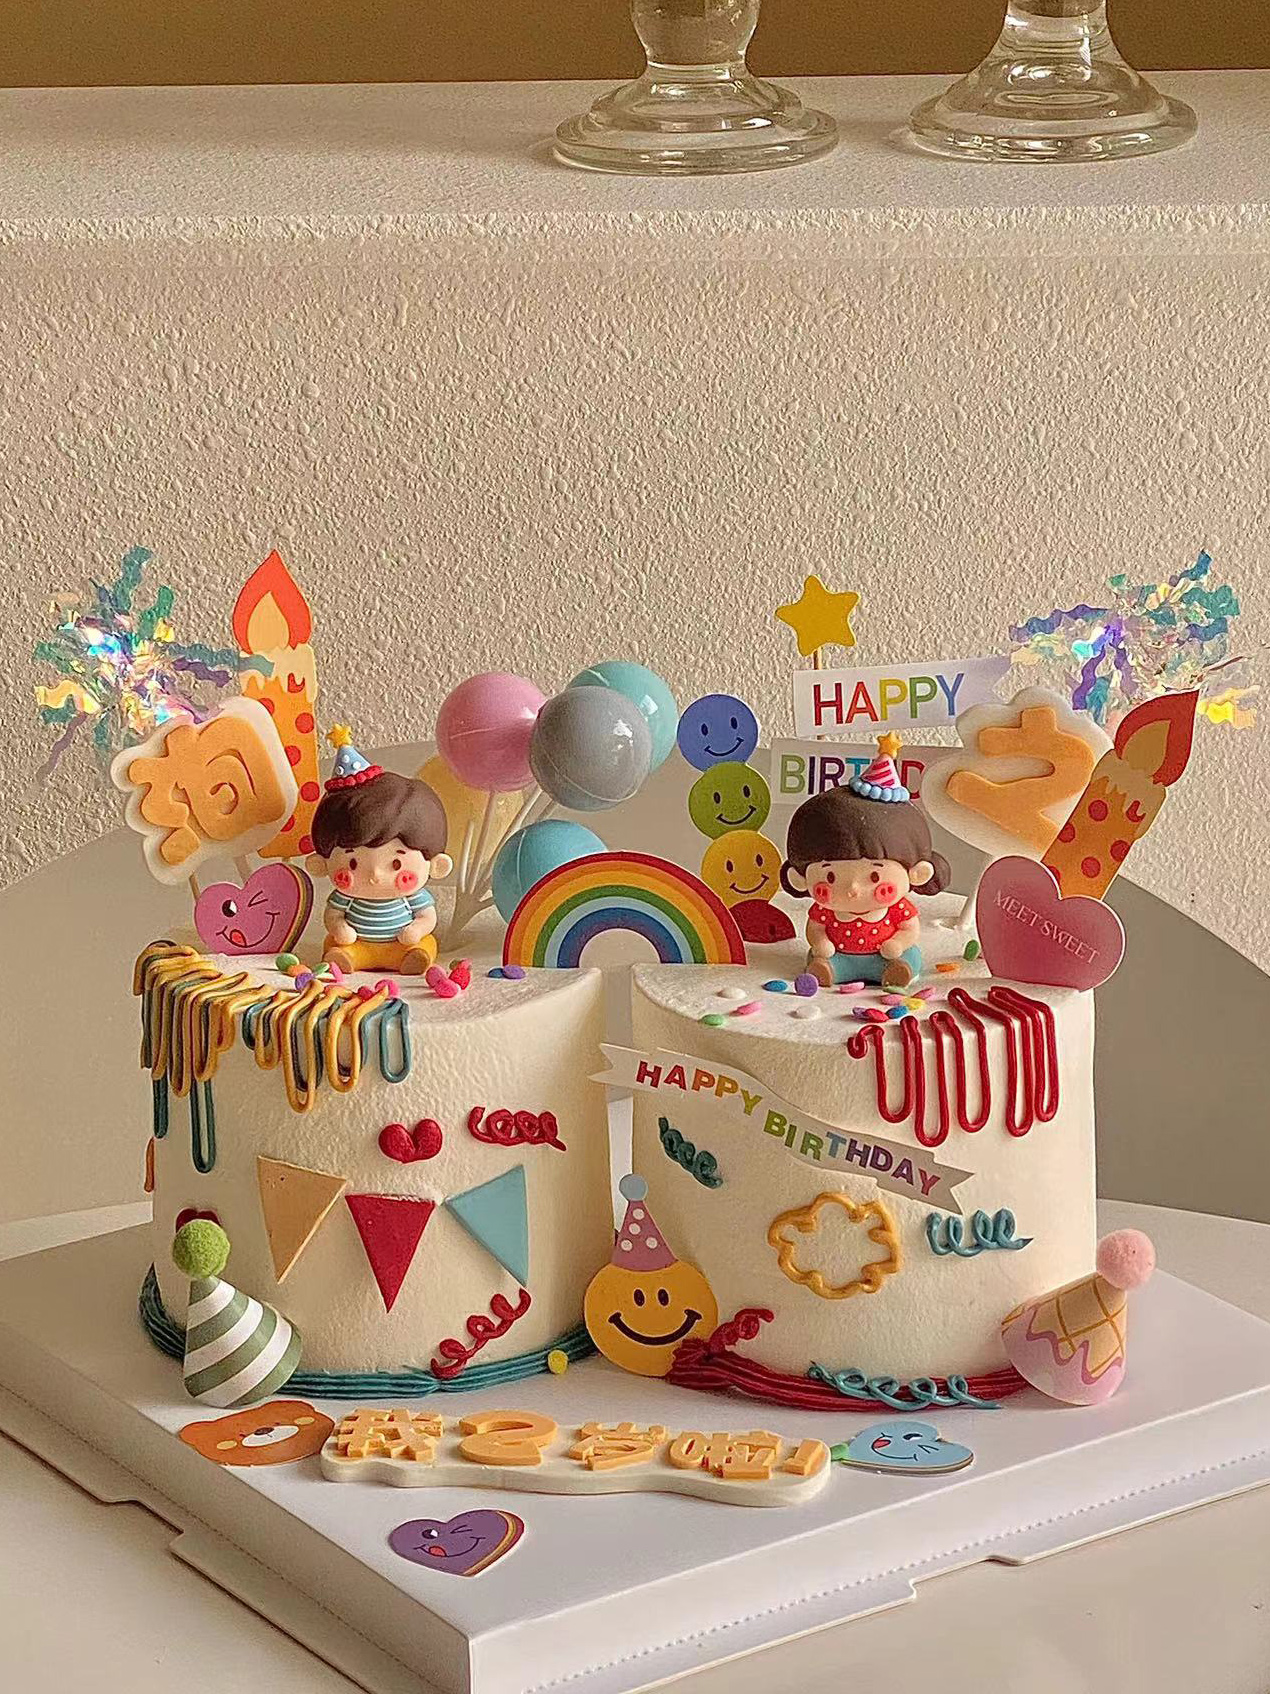 卡通可爱男孩女孩蛋糕装饰 双胞胎宝宝周岁百天生日蛋糕摆件插件